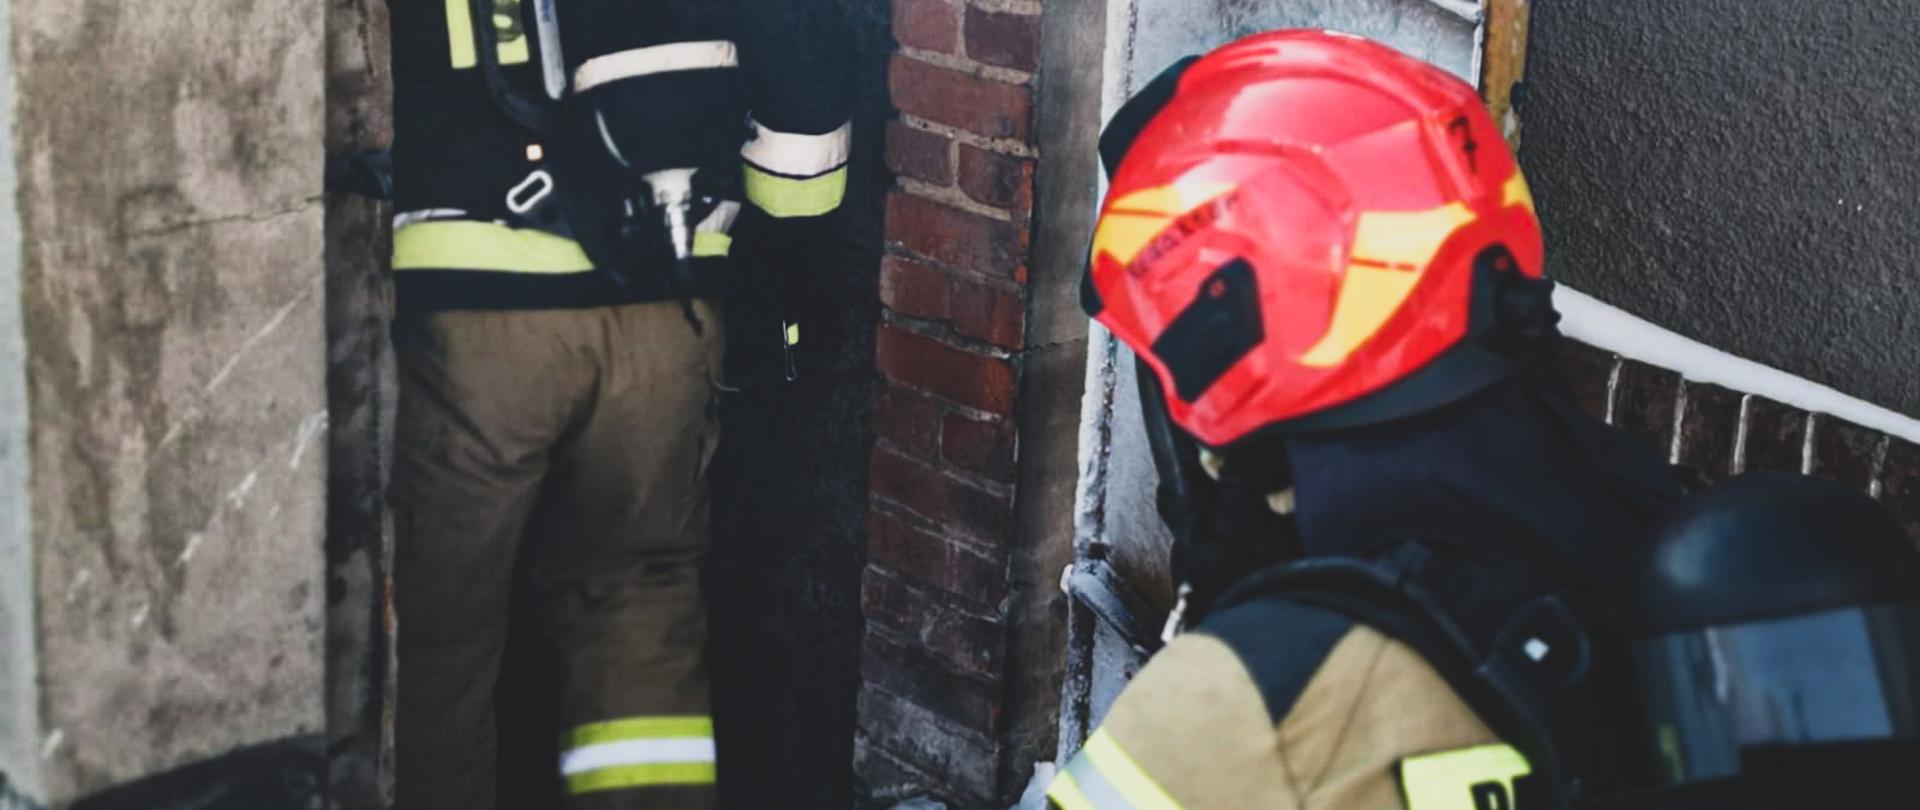 Na zdjęciu znajduje się dwóch strażaków ubranych w aparaty powietrzne i ubrania specjalne, którzy schodzą po schodach do piwnicy w budynku mieszkalnym
